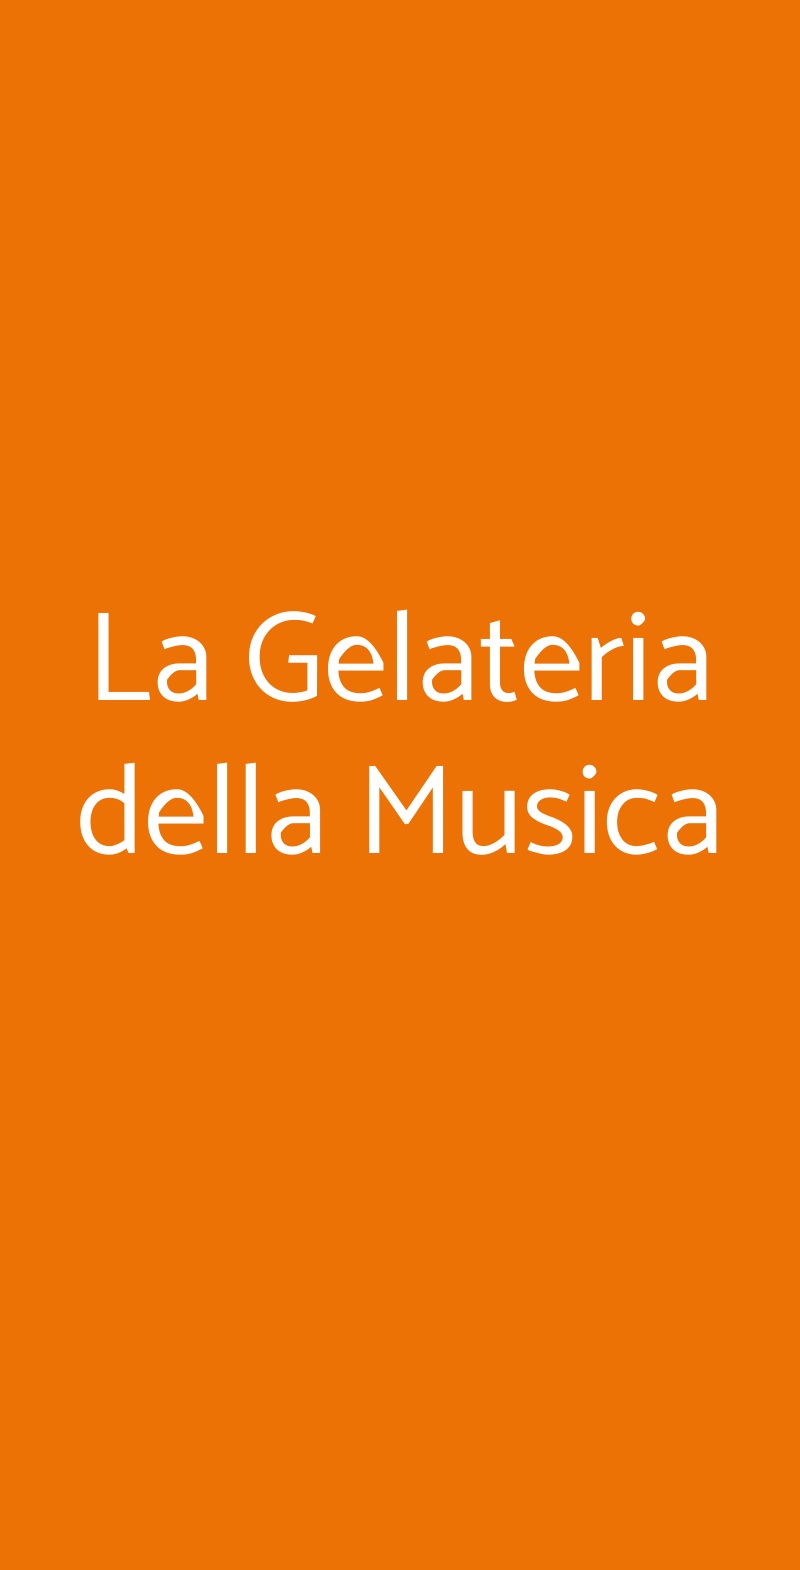 La Gelateria della Musica Milano menù 1 pagina